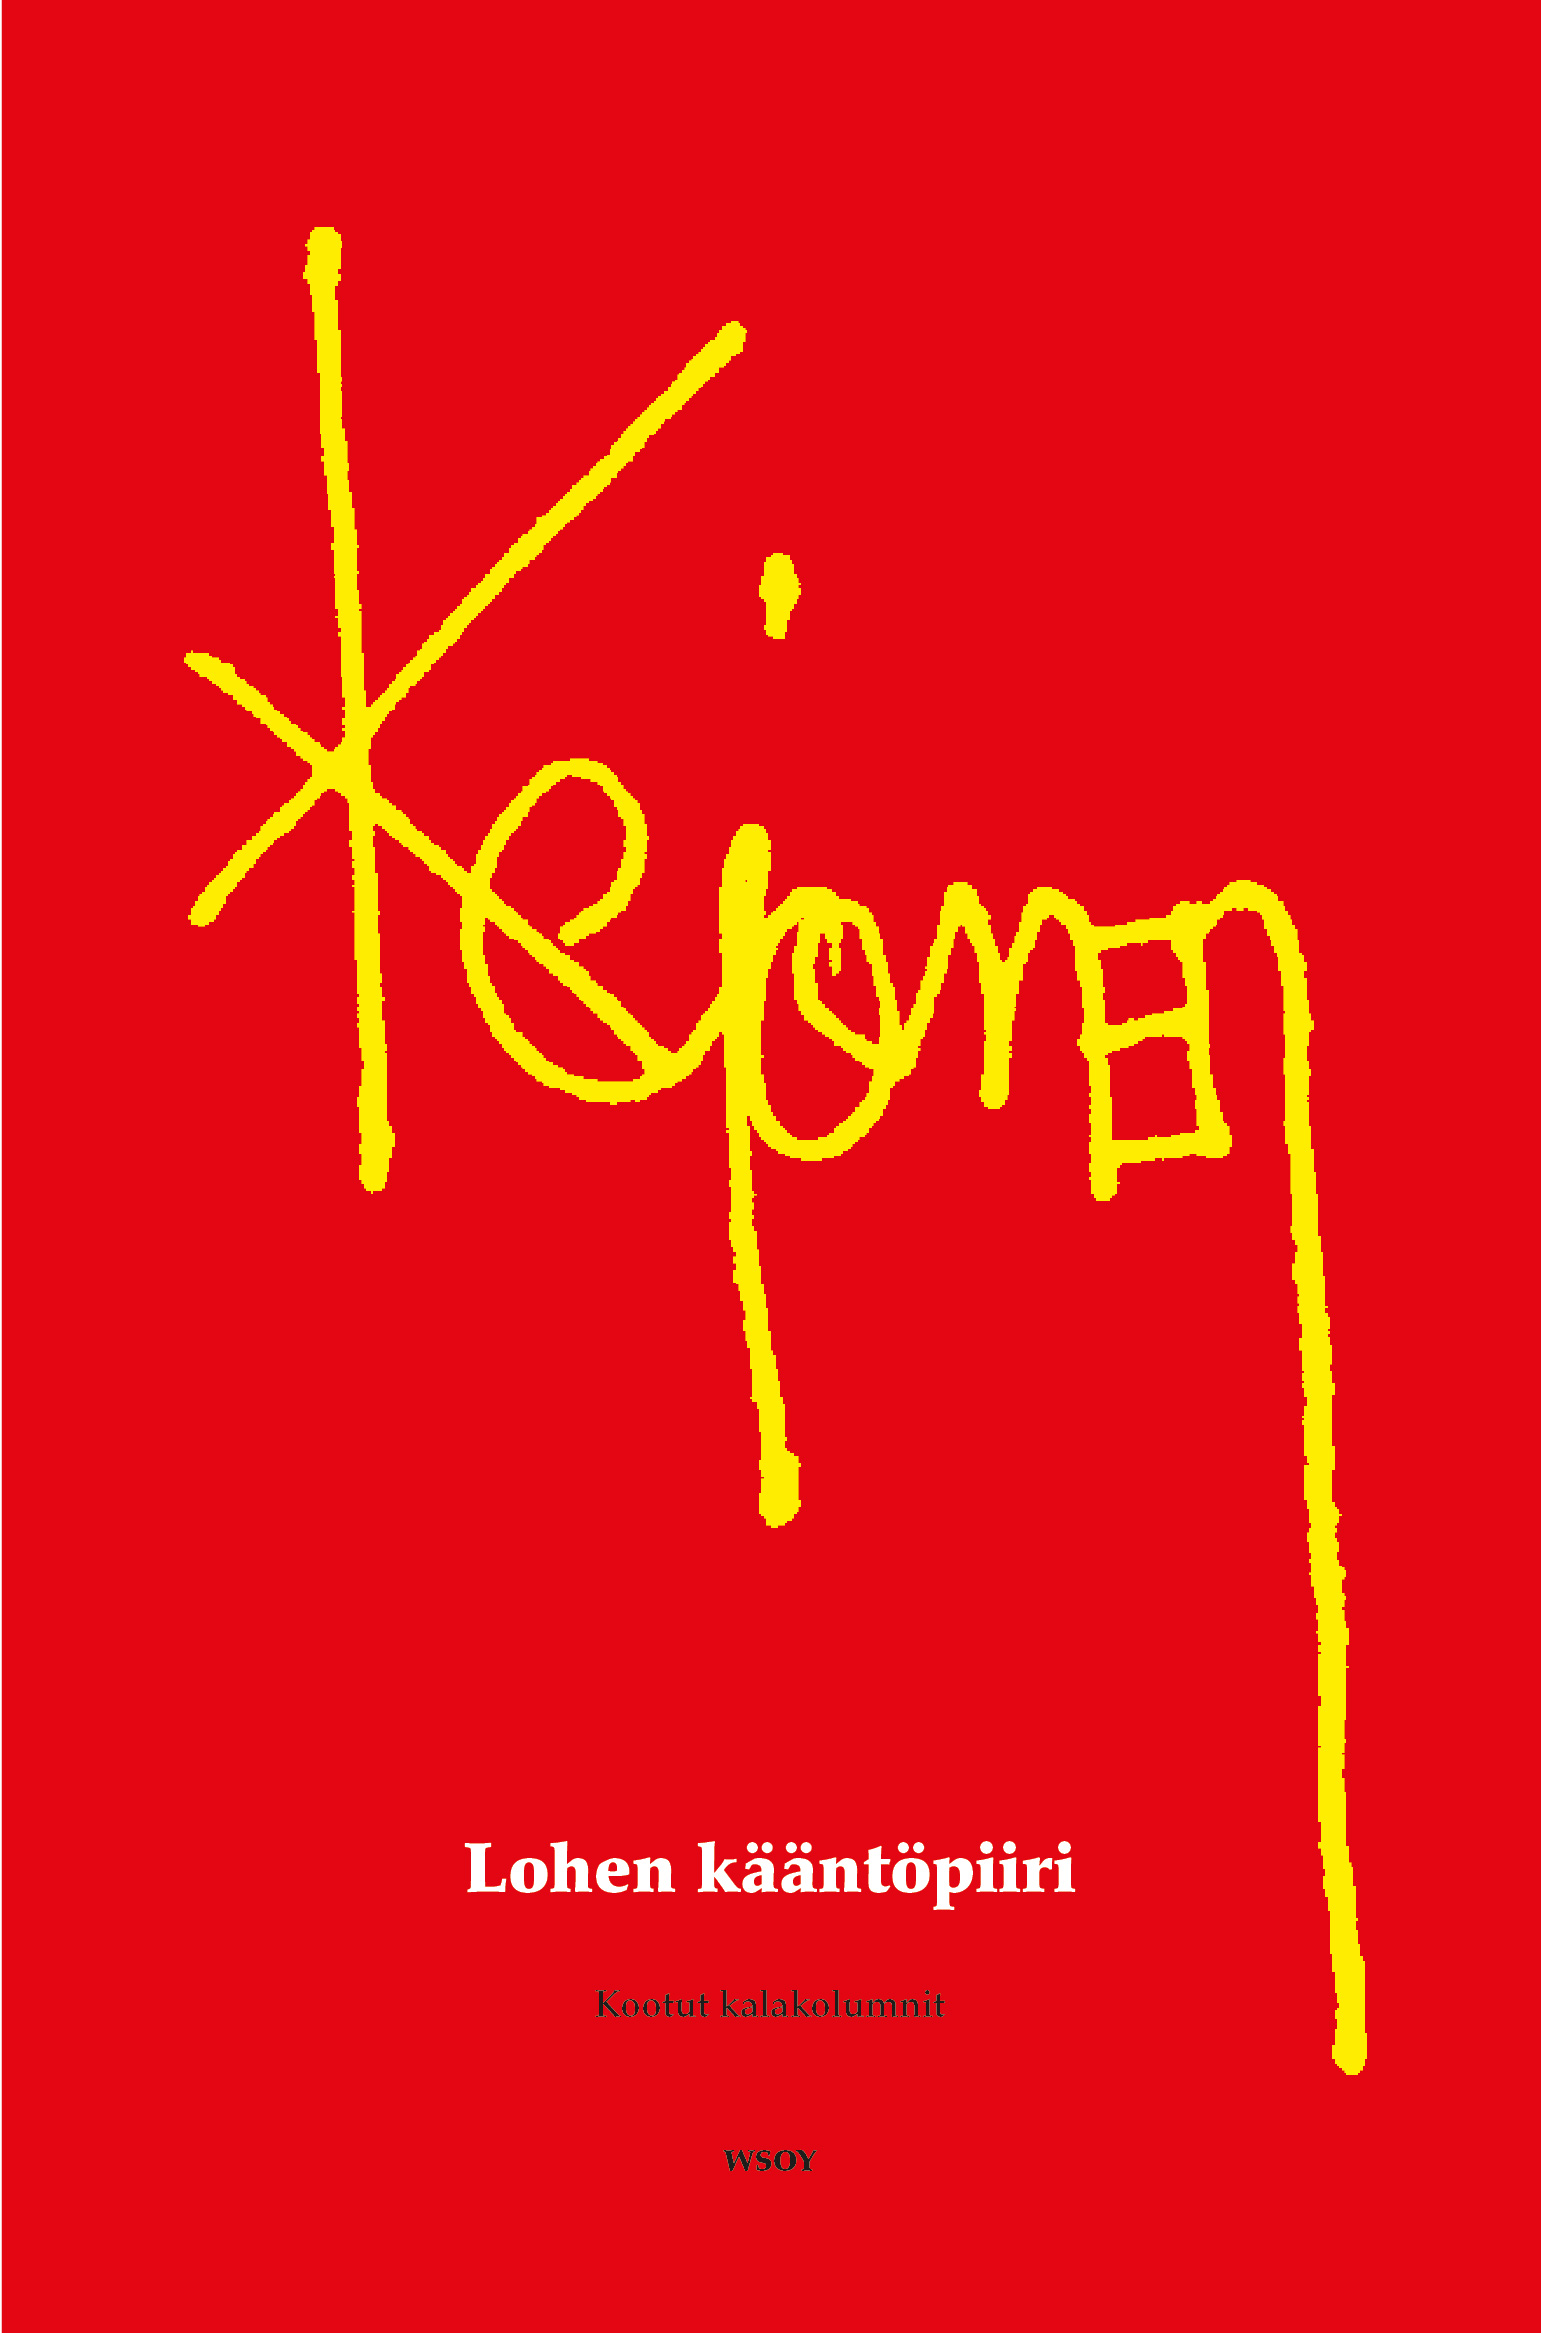 Kejonen, Pekka - Lohen kääntöpiiri: Kootut kalakolumnit, ebook